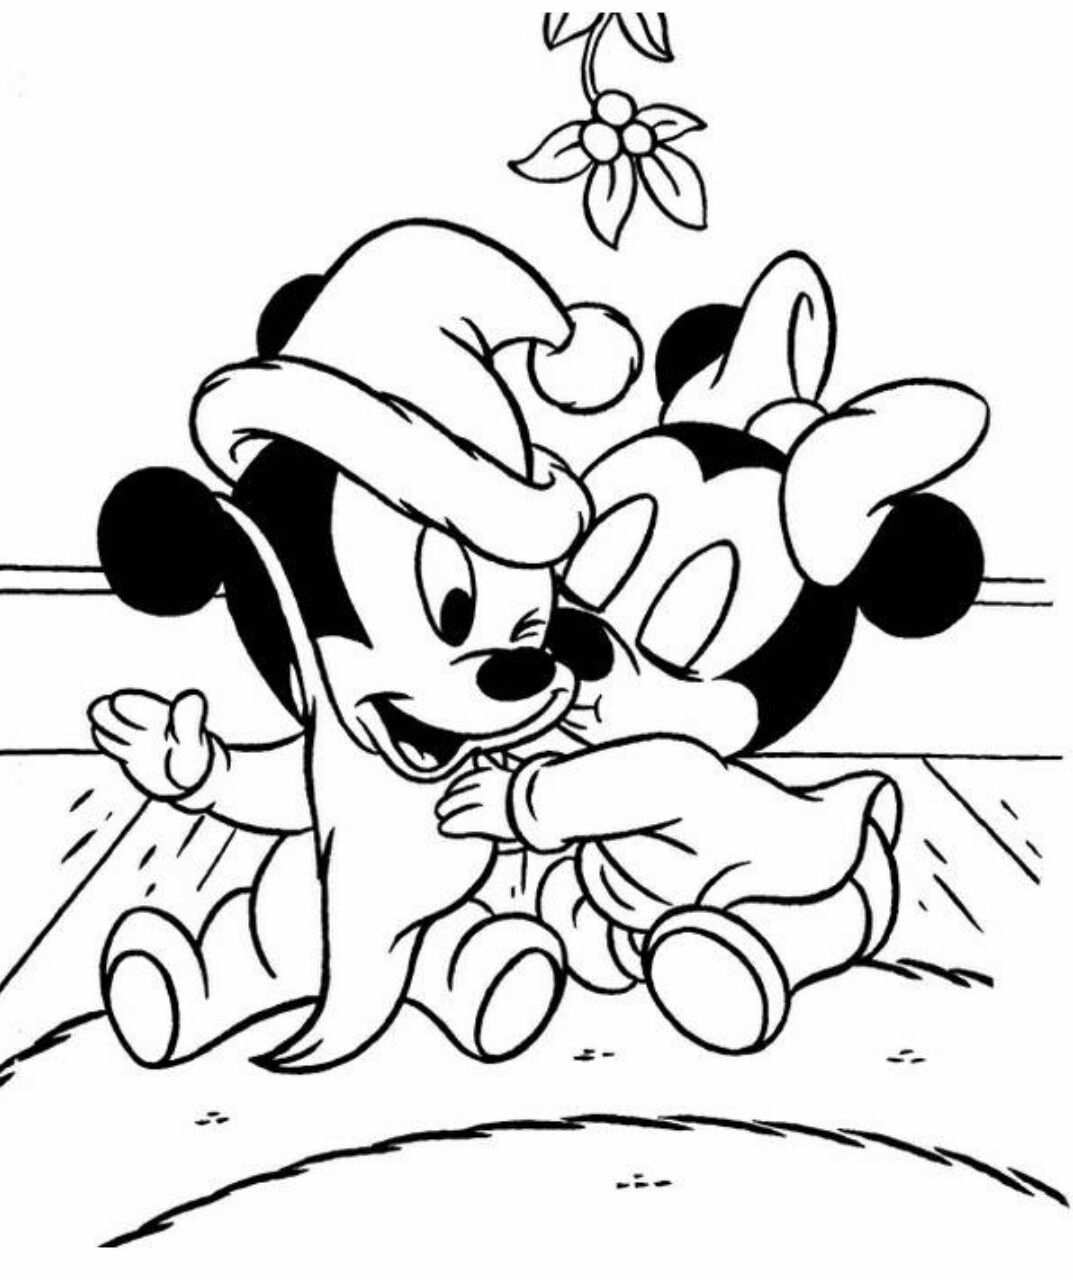 Kleurplaat Kerst Mickey En Minnie Mouse Kleurplaten Disney Kleurplaten Kerstmis Kleurplaten